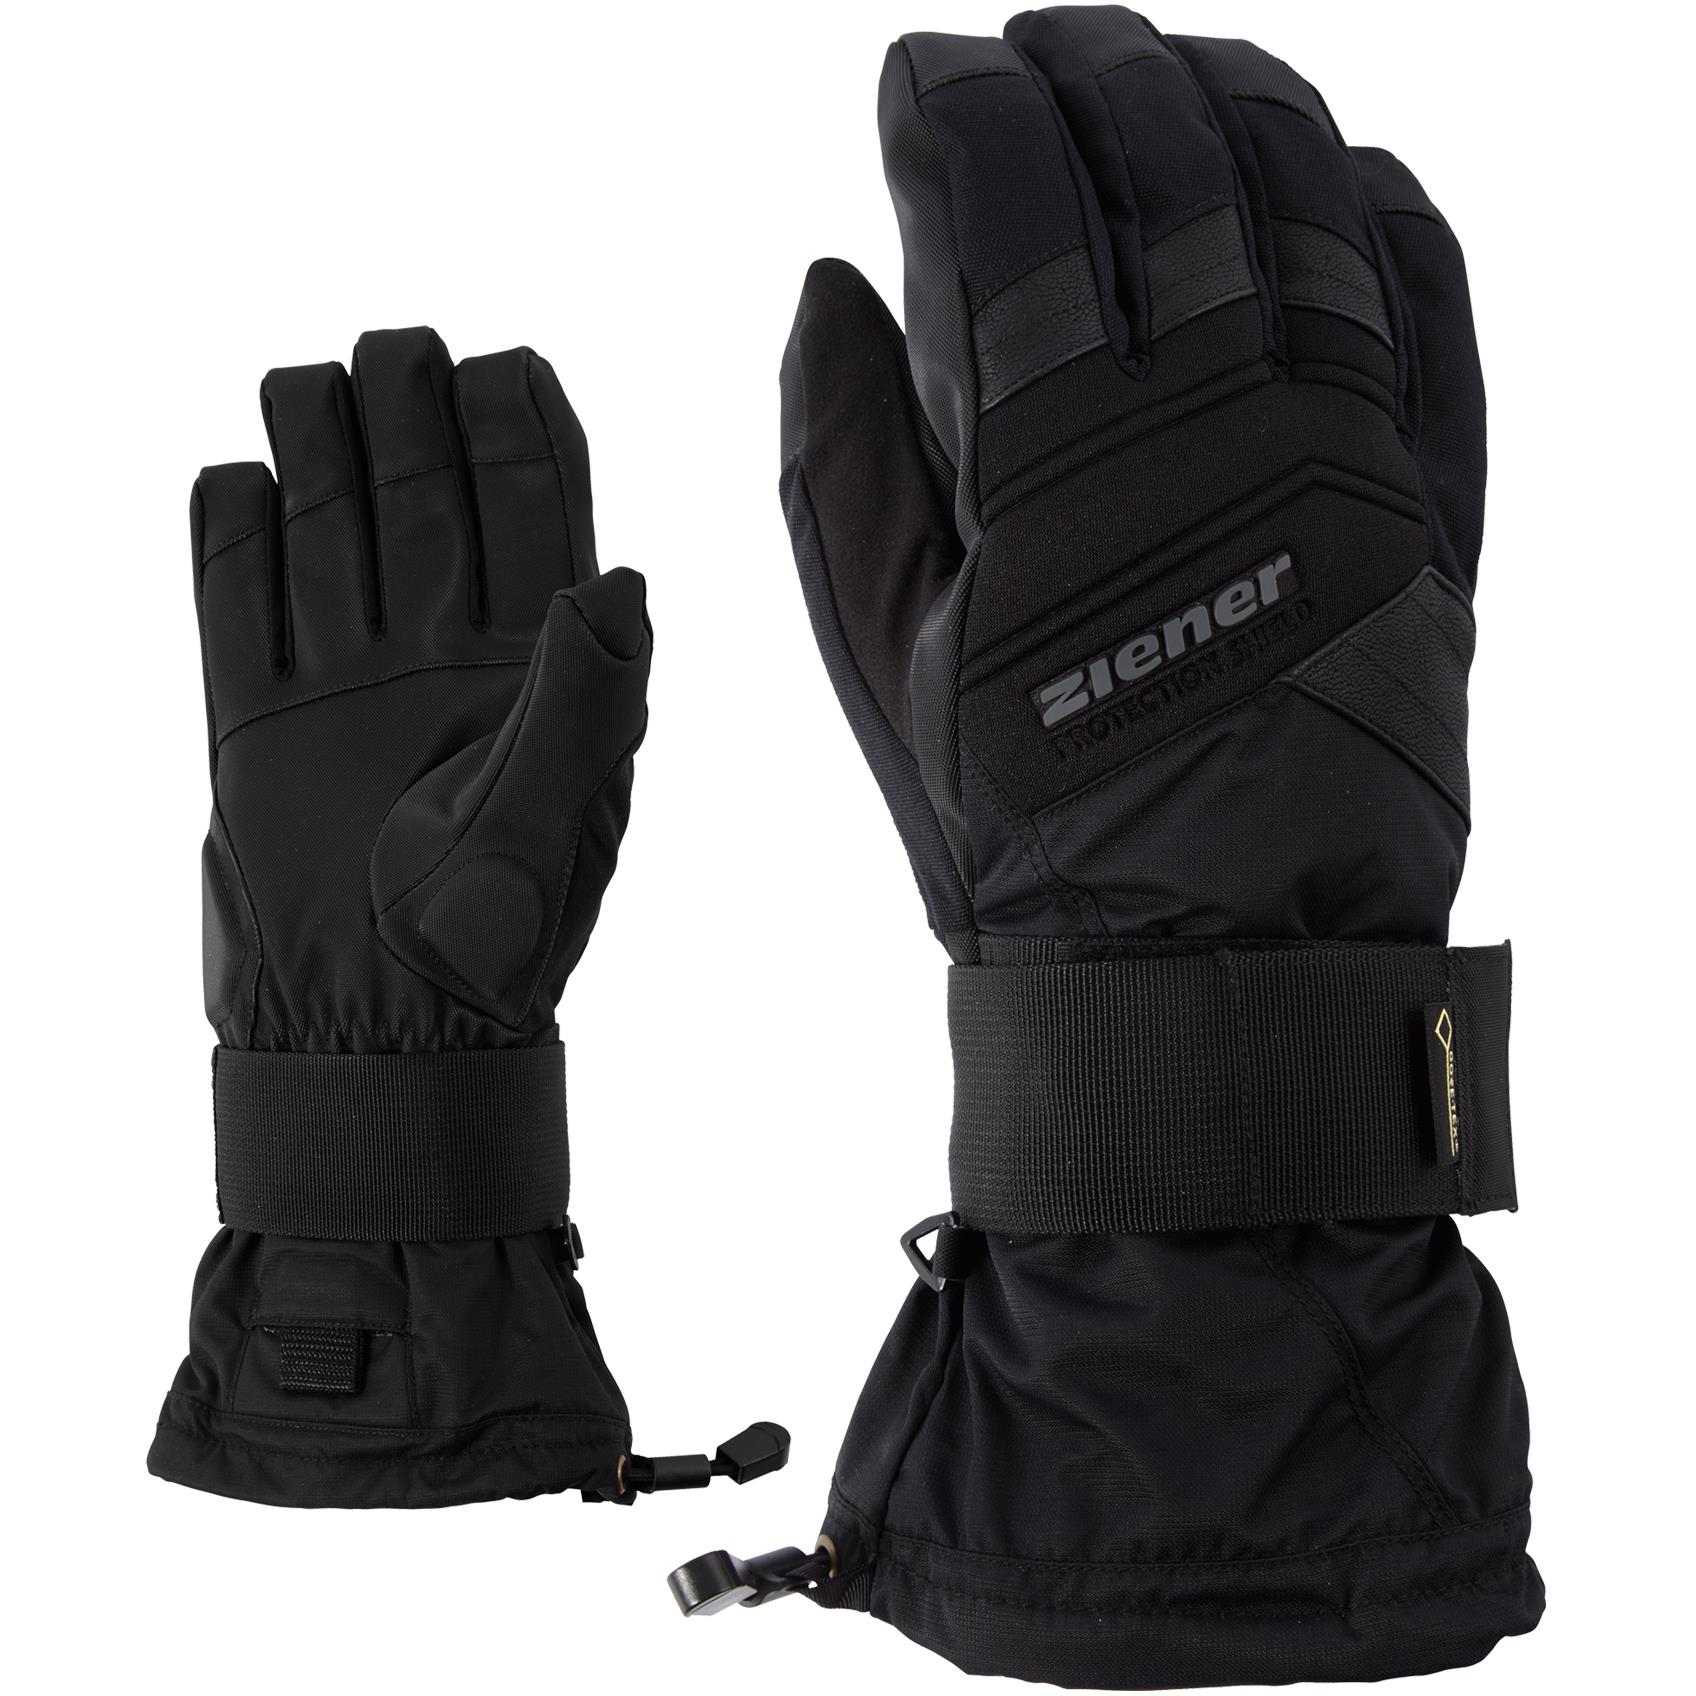 Ziener Medical GTX handschoenen black